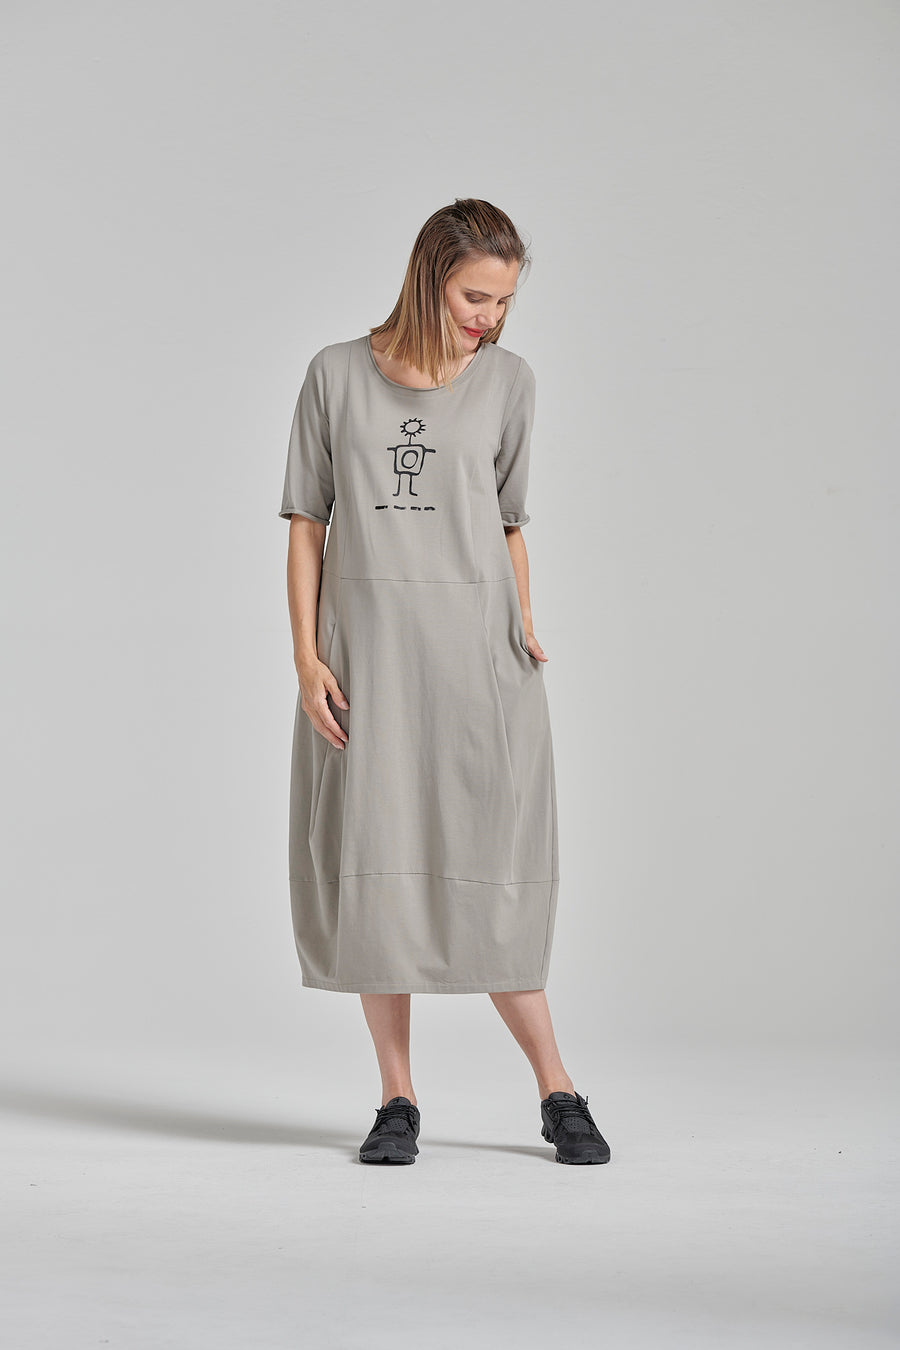 Kleid aus feinem Baumwolljersey mit 5% Elasthan (Art.-Nr. 132k2)